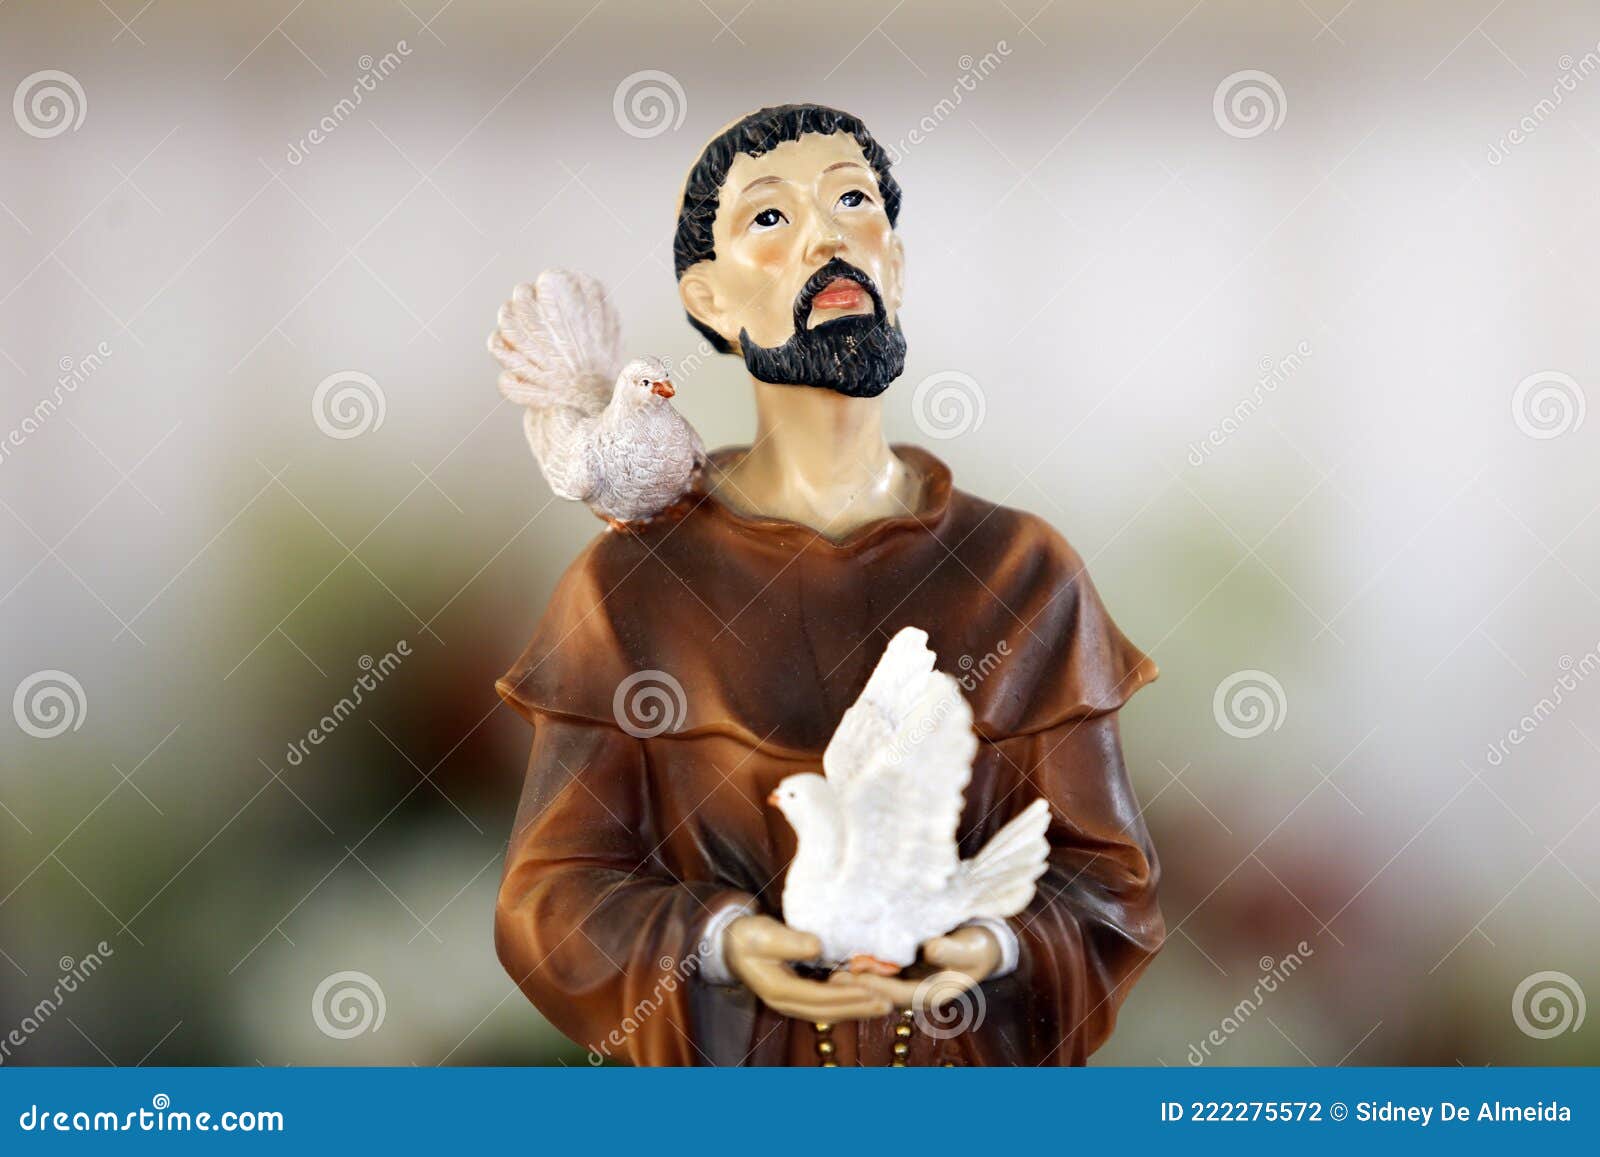 Saint Francis of Assisi Catholic Image Stock Photo - Image of assisi ...